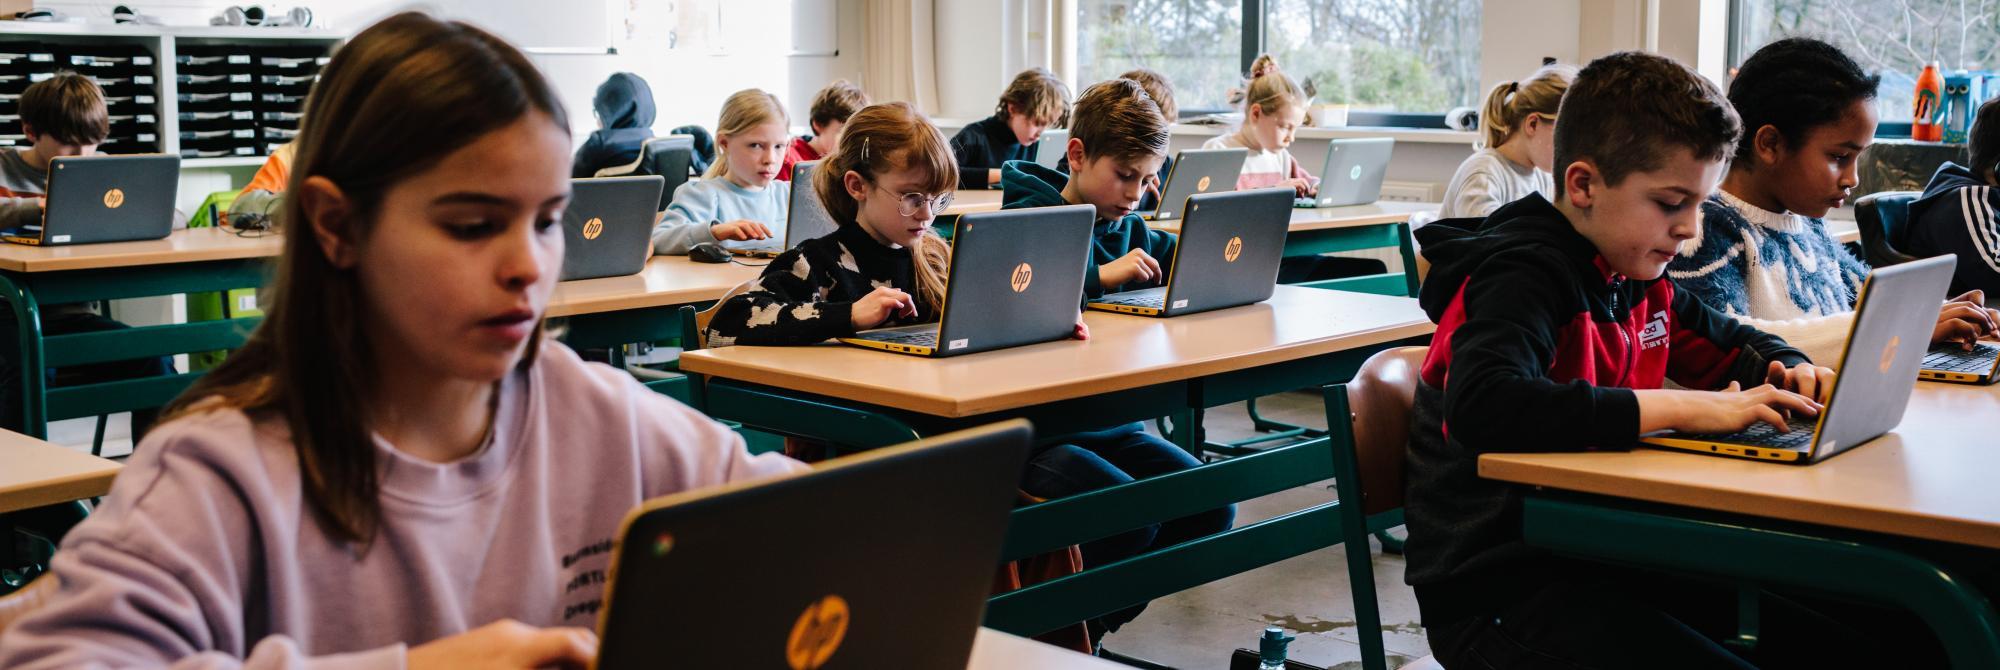 Kinderen in de klas werken op laptops